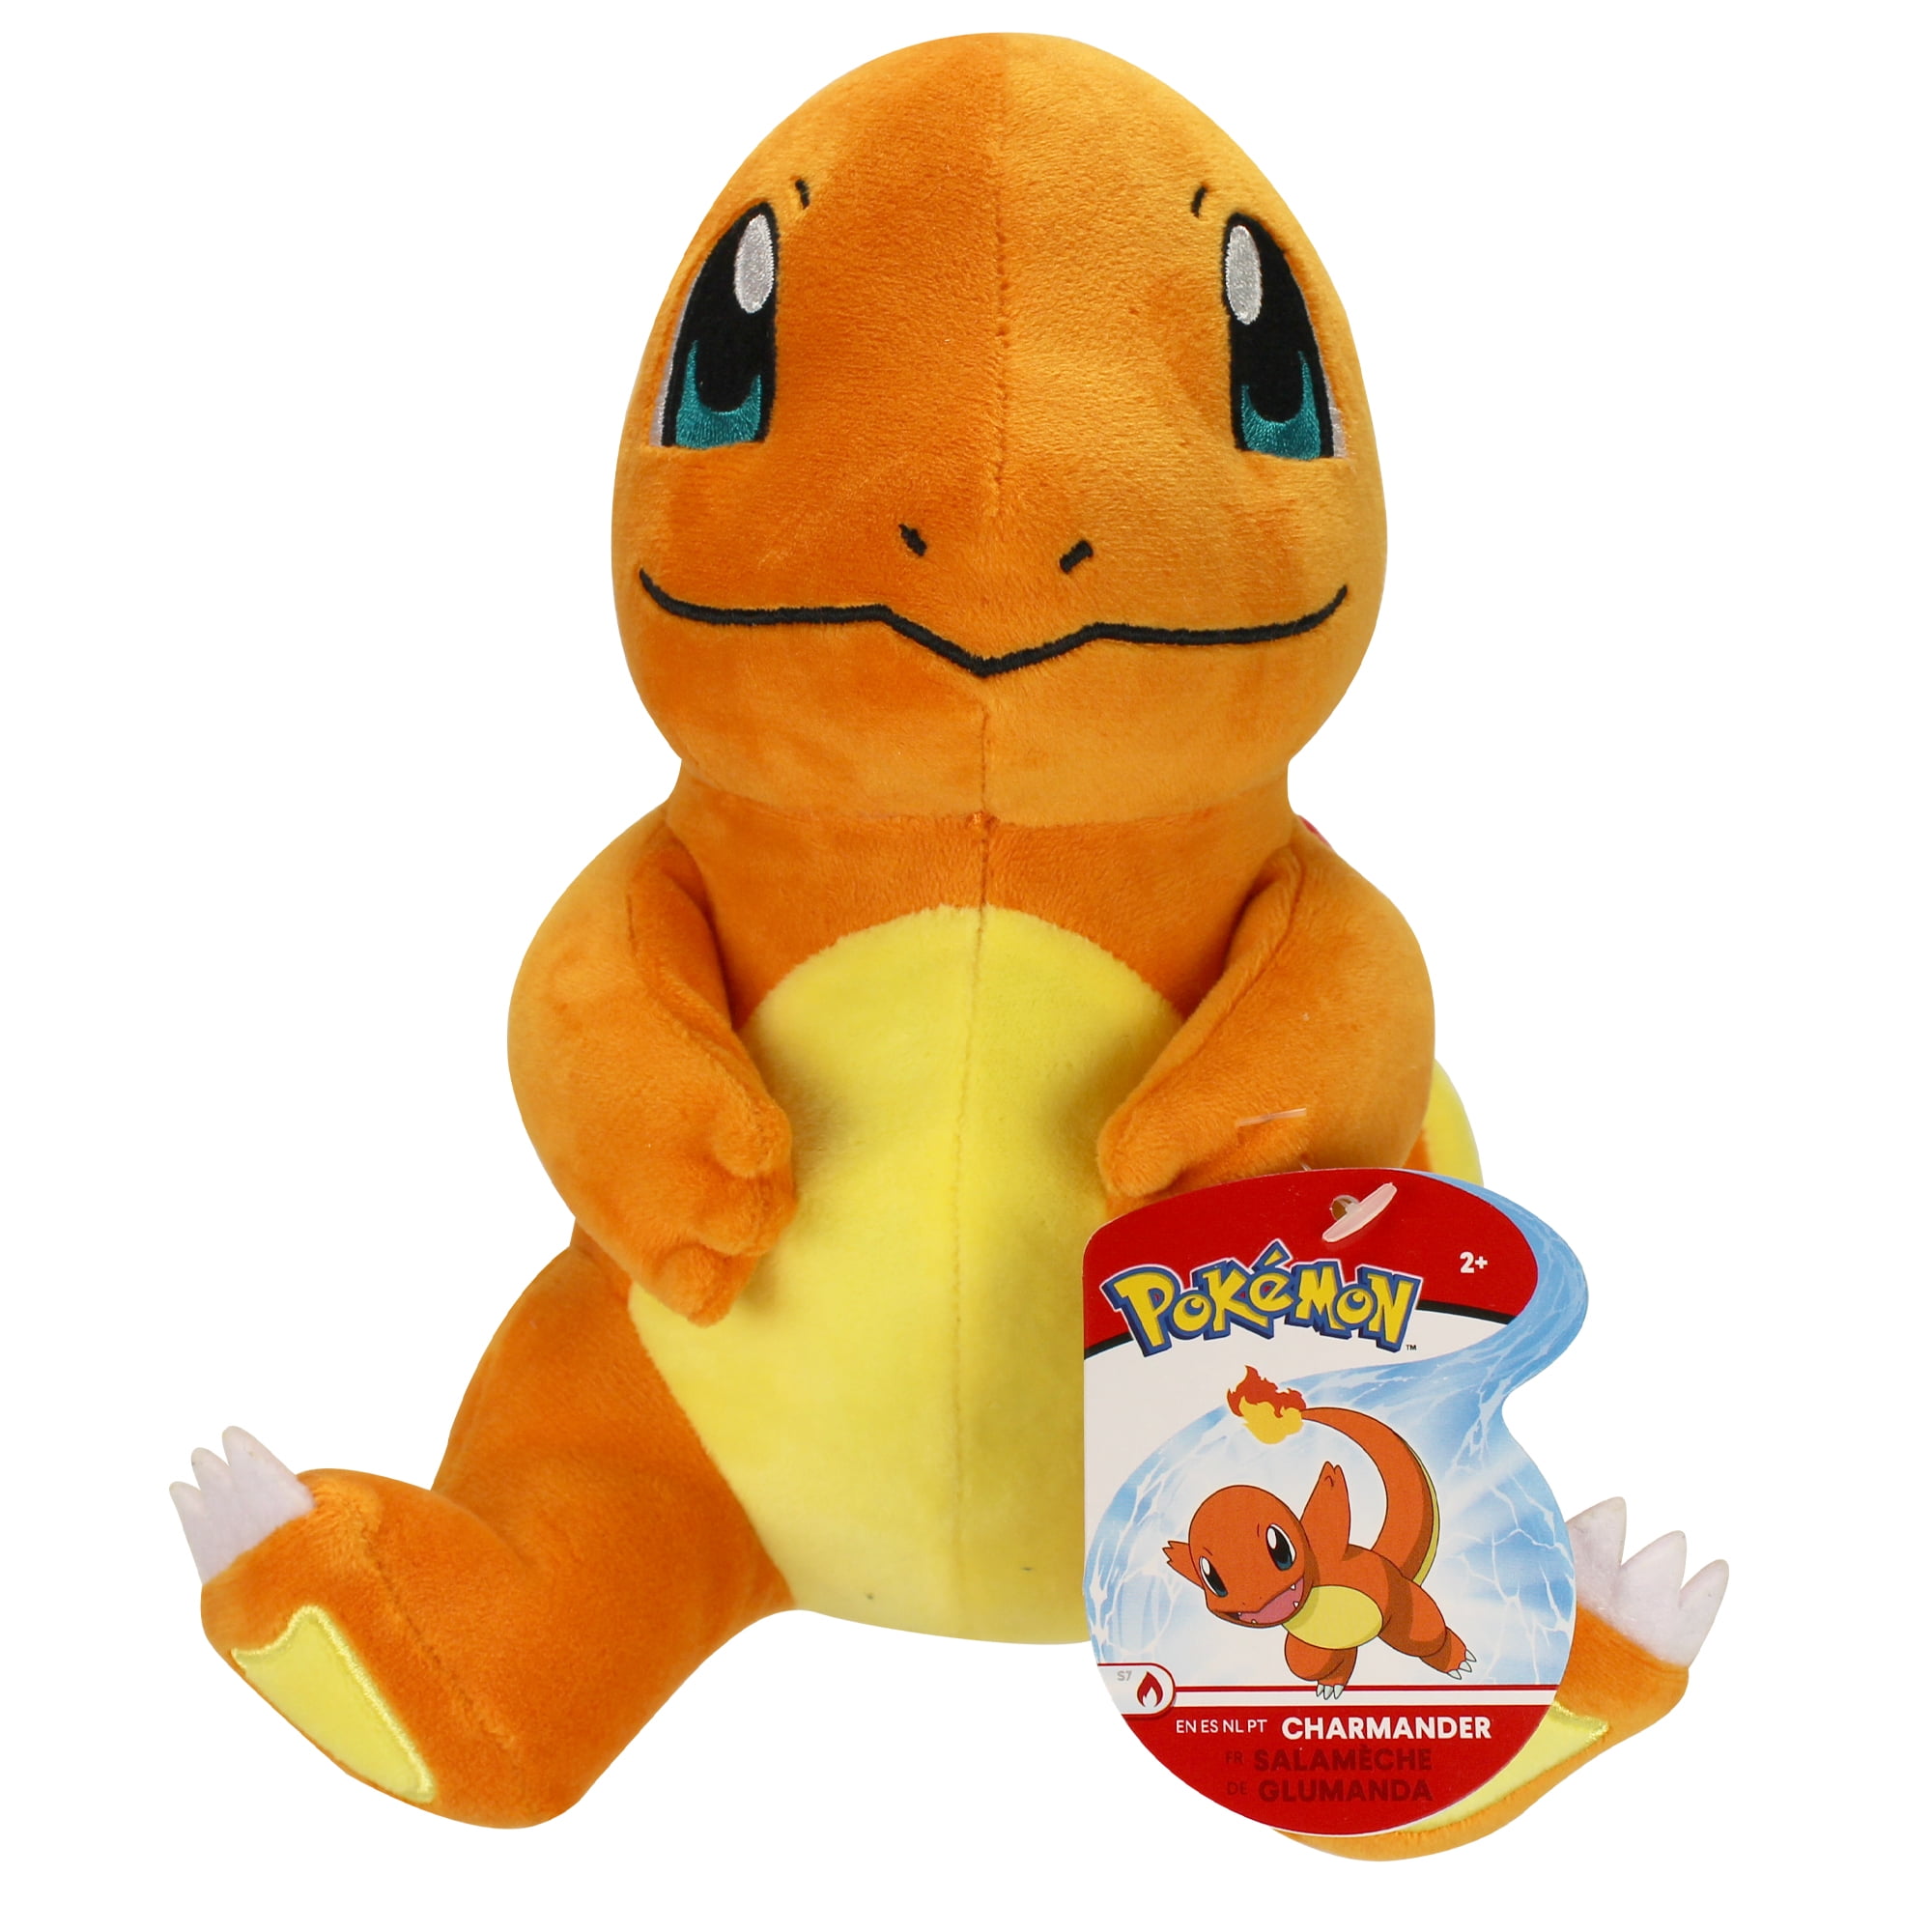 New Pokemon 8 Inch Charmander Soft Plush Toy 